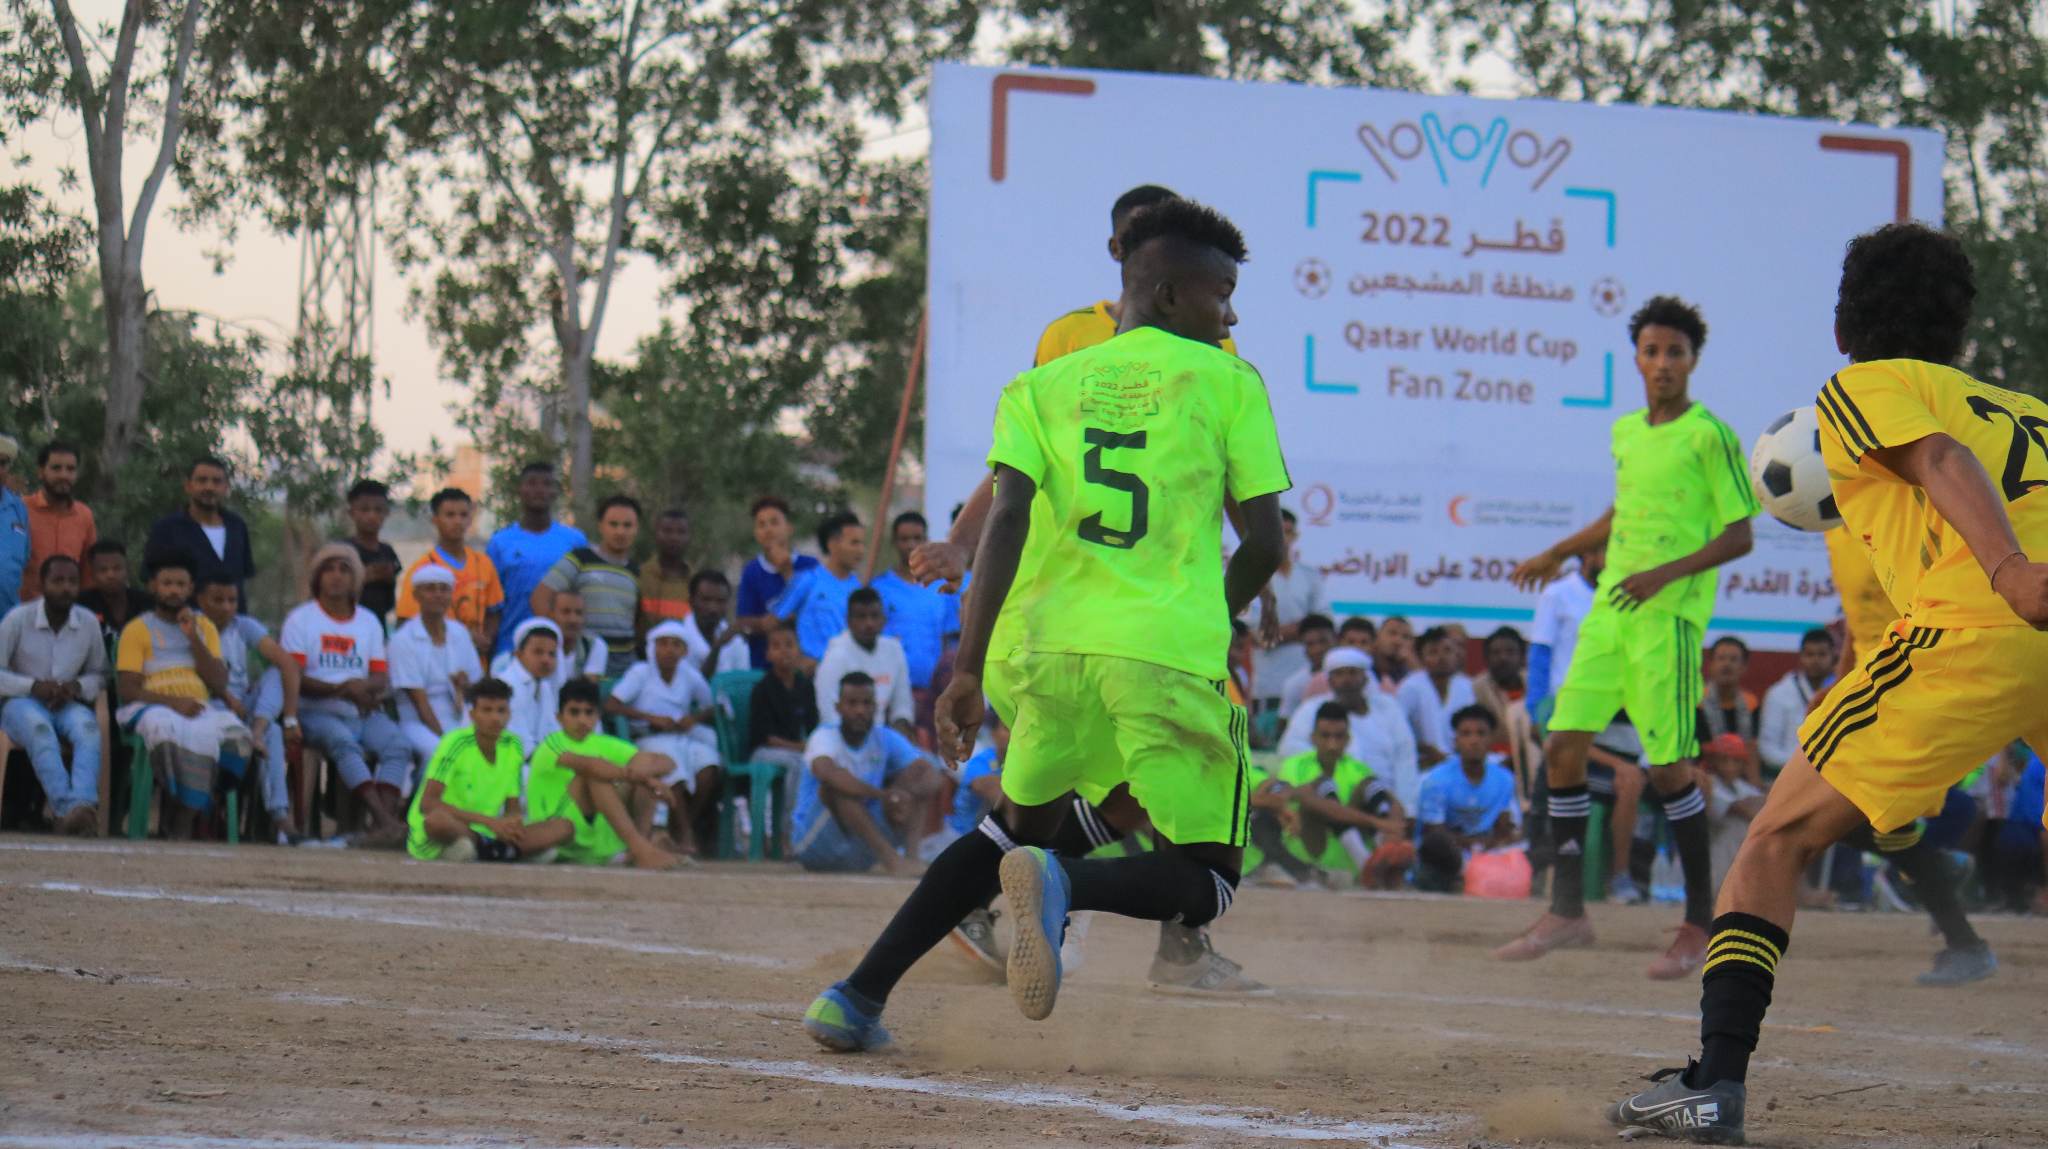 فوز الإرشاد على الشباب في افتتاح بطولة كأس العالم بالحديدة